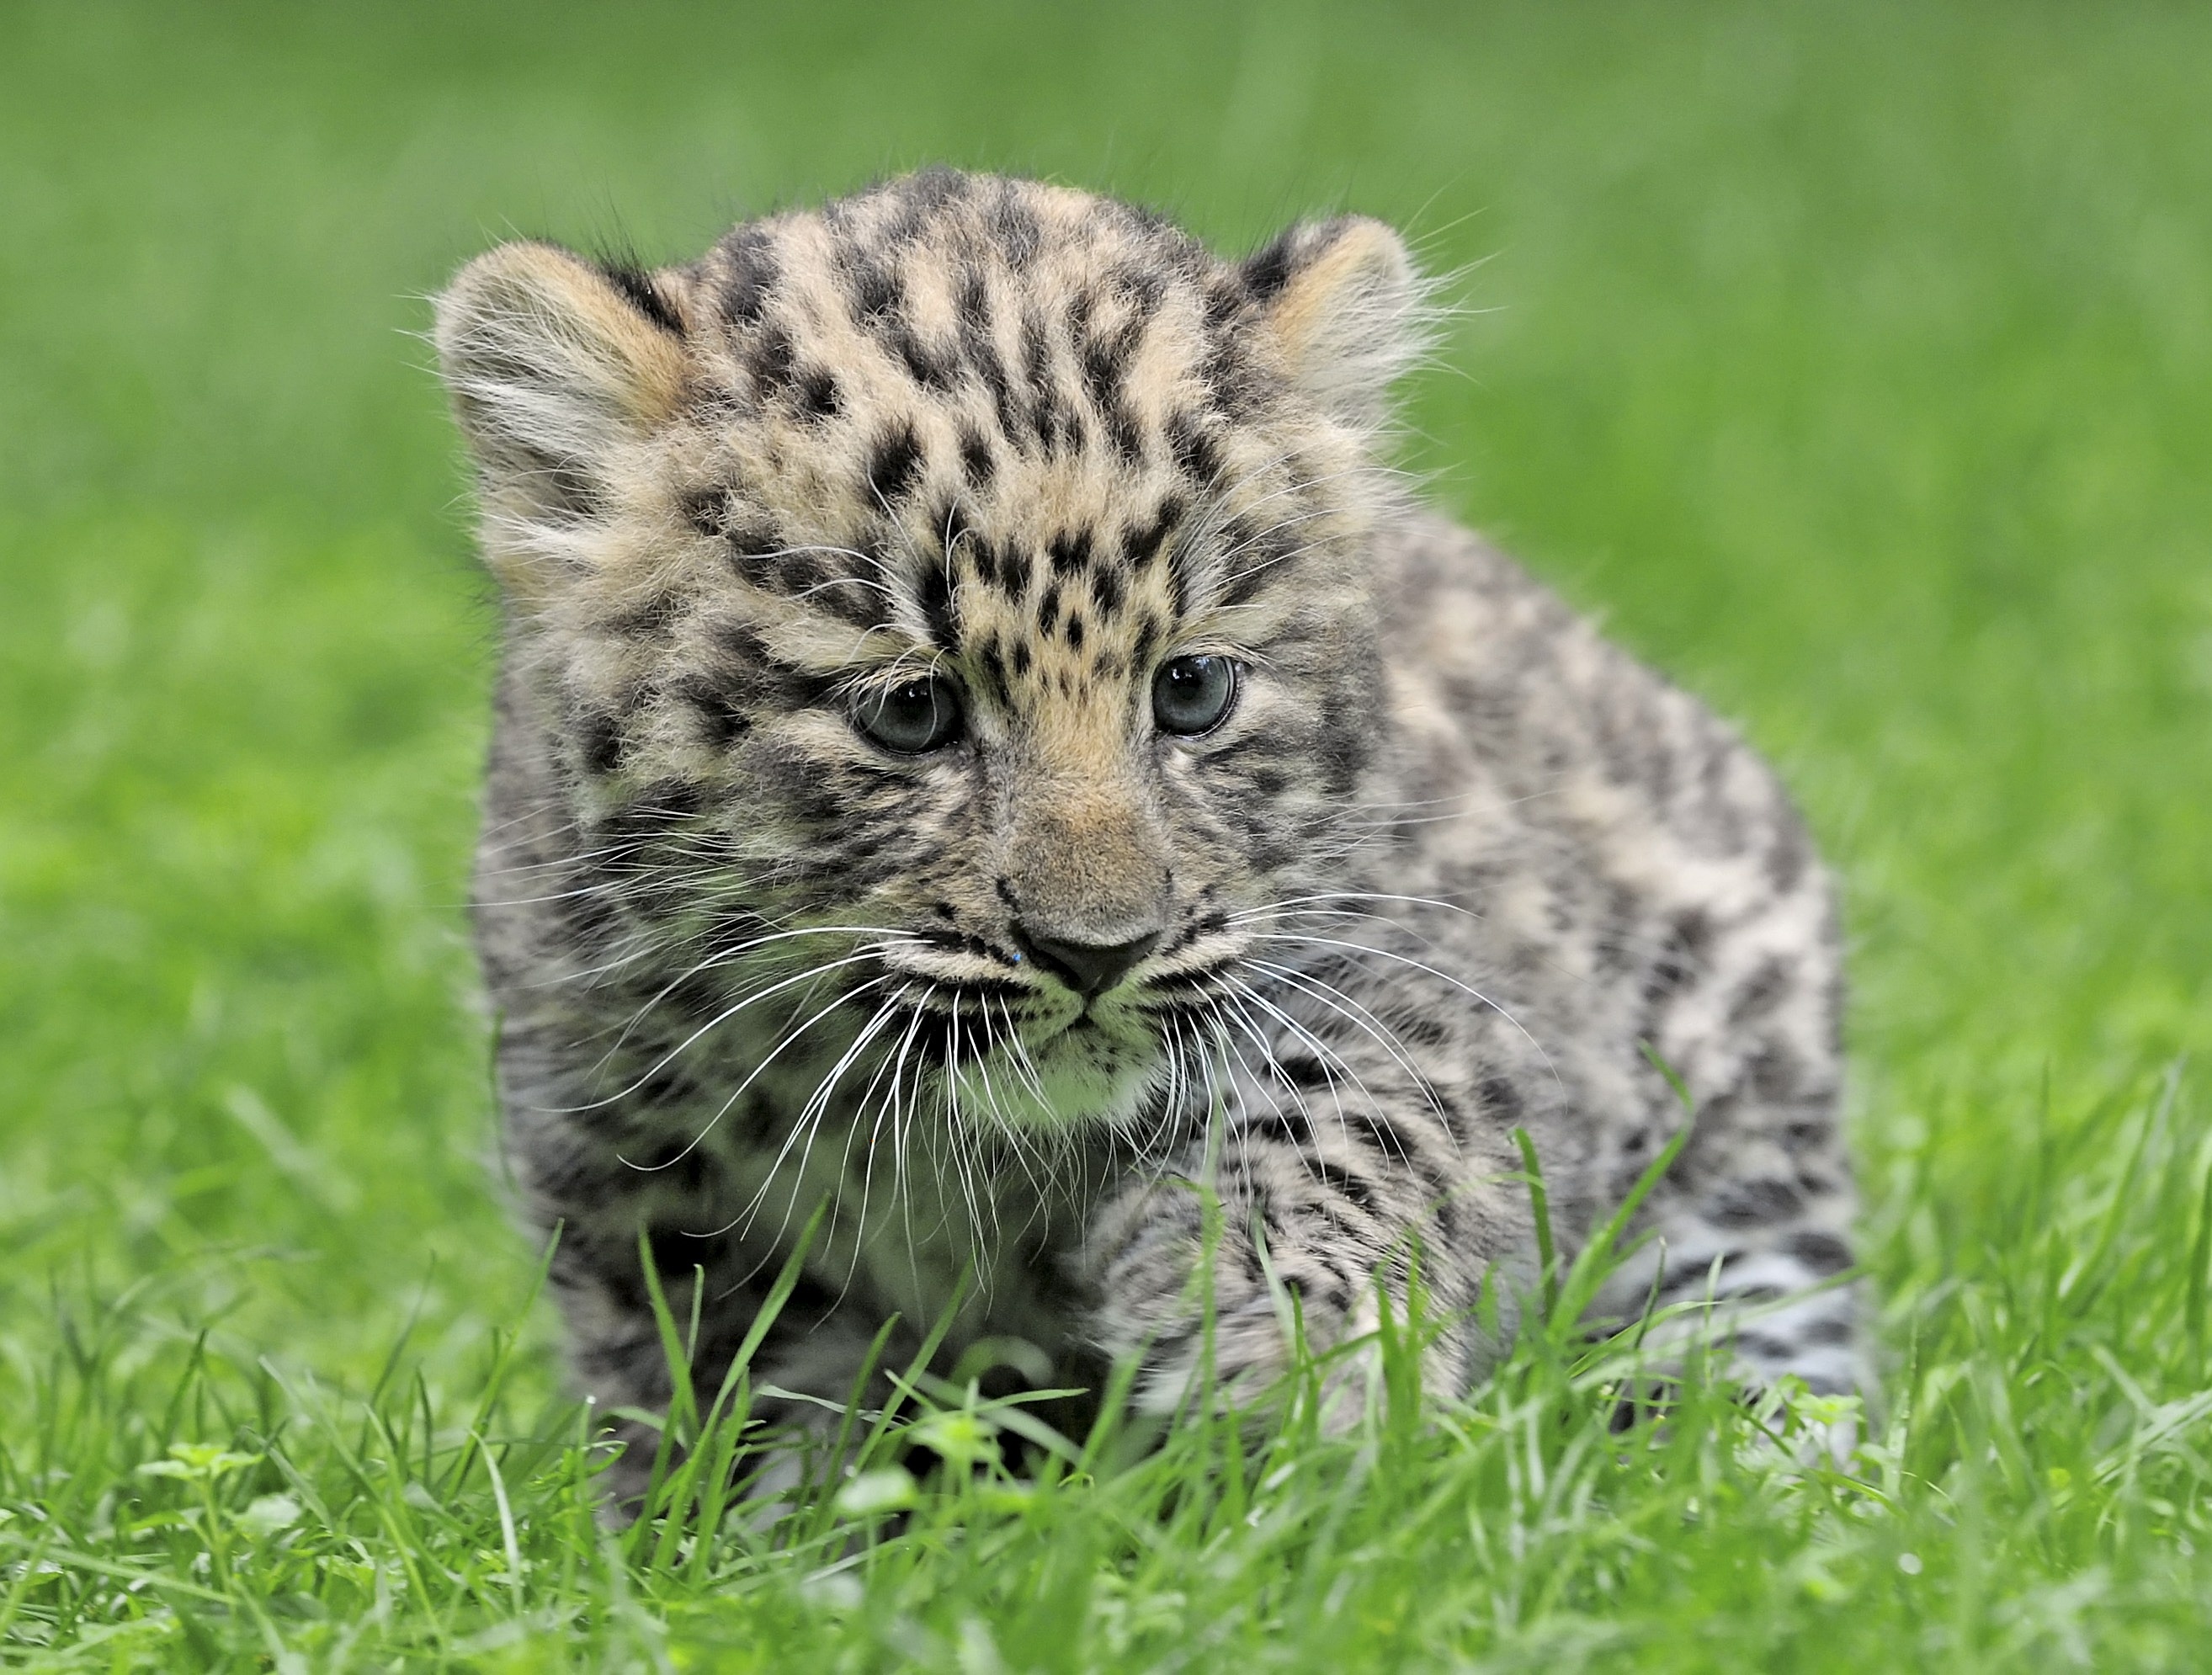 Animals images. Дальневосточный леопард Детеныши. Дальневосточный леопард малыш. Маленький леопард. Детеныш леопарда.